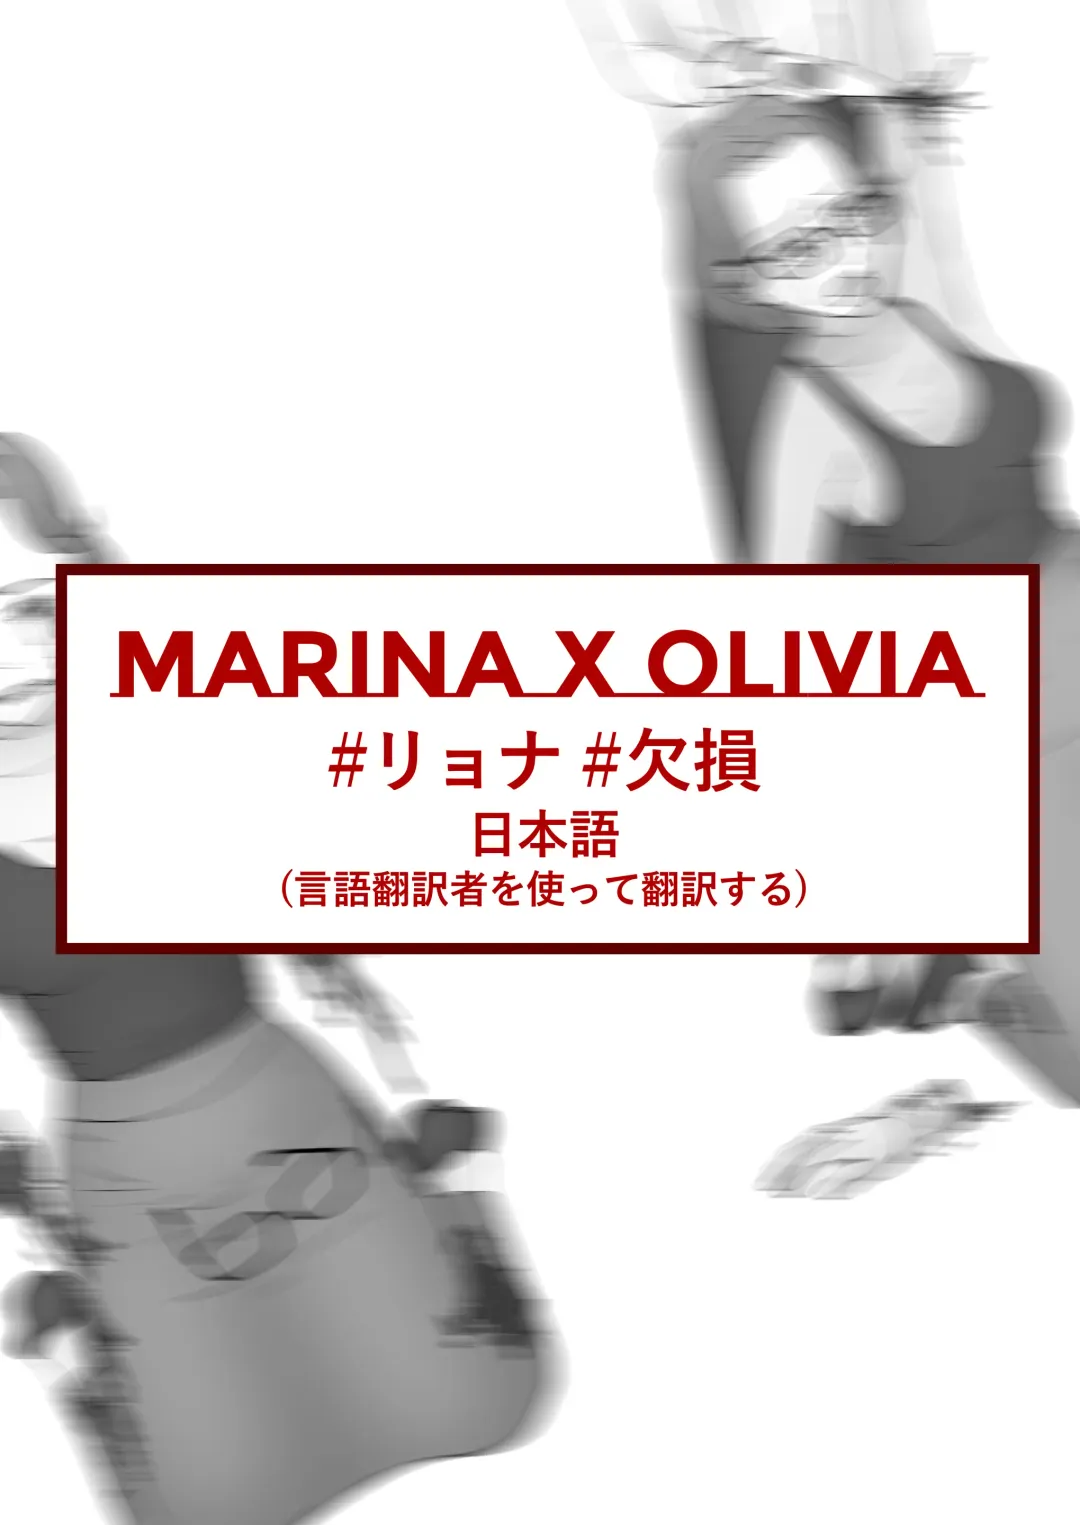 Read MARINA X OLIVIA #1 - Fhentai.net